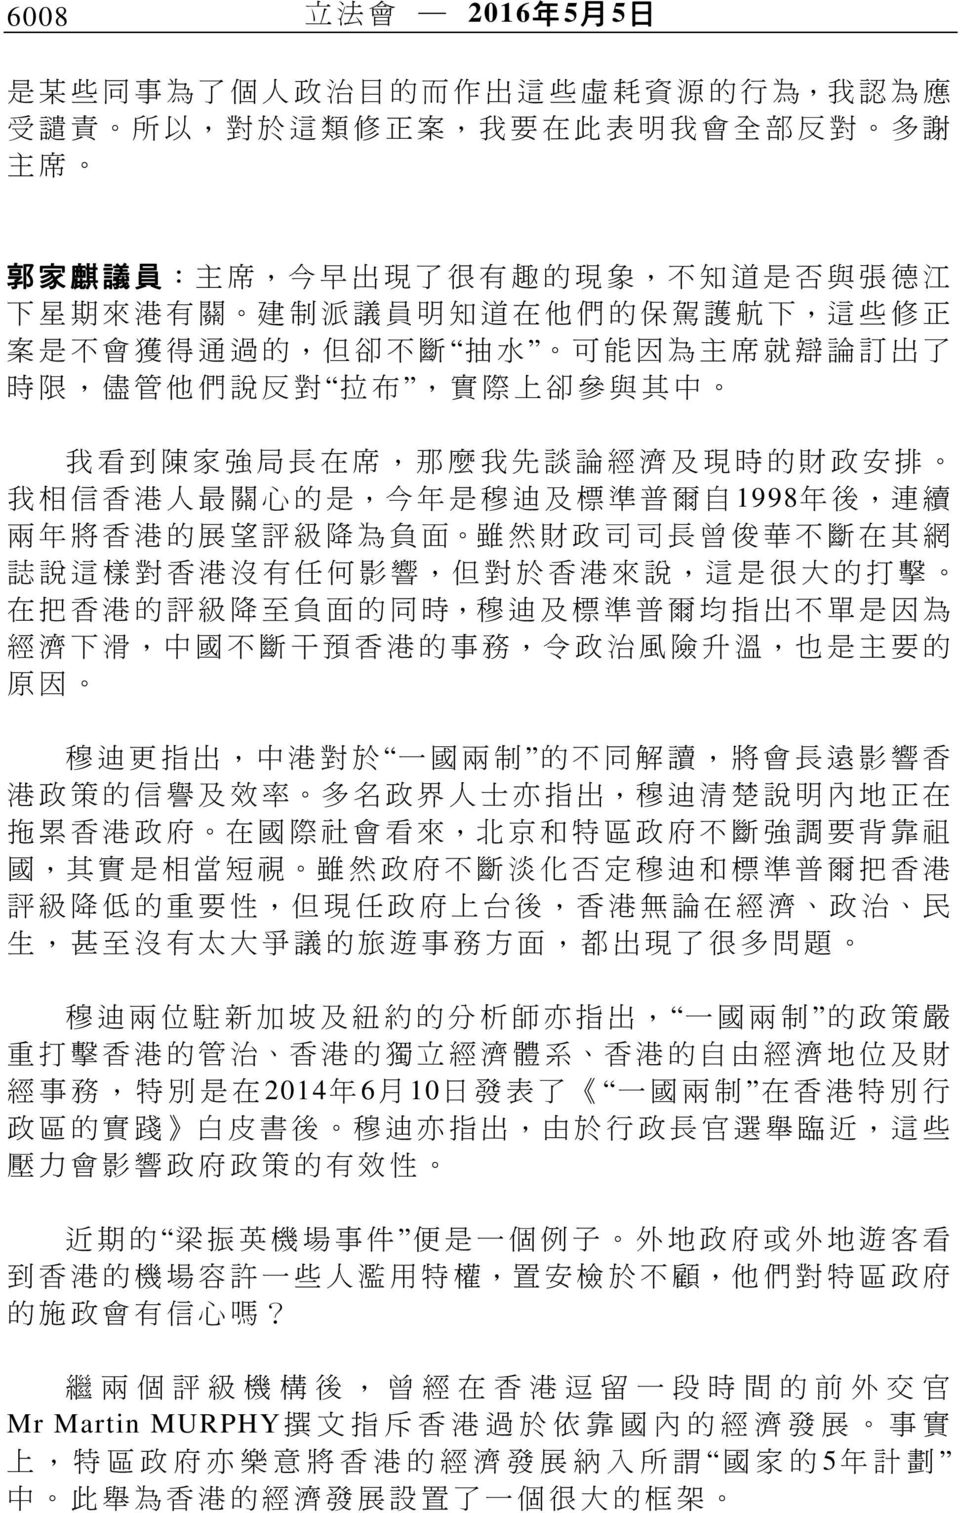 財 政 安 排 我 相 信 香 港 人 最 關 心 的 是, 今 年 是 穆 迪 及 標 準 普 爾 自 1998 年 後, 連 續 兩 年 將 香 港 的 展 望 評 級 降 為 負 面 雖 然 財 政 司 司 長 曾 俊 華 不 斷 在 其 網 誌 說 這 樣 對 香 港 沒 有 任 何 影 響, 但 對 於 香 港 來 說, 這 是 很 大 的 打 擊 在 把 香 港 的 評 級 降 至